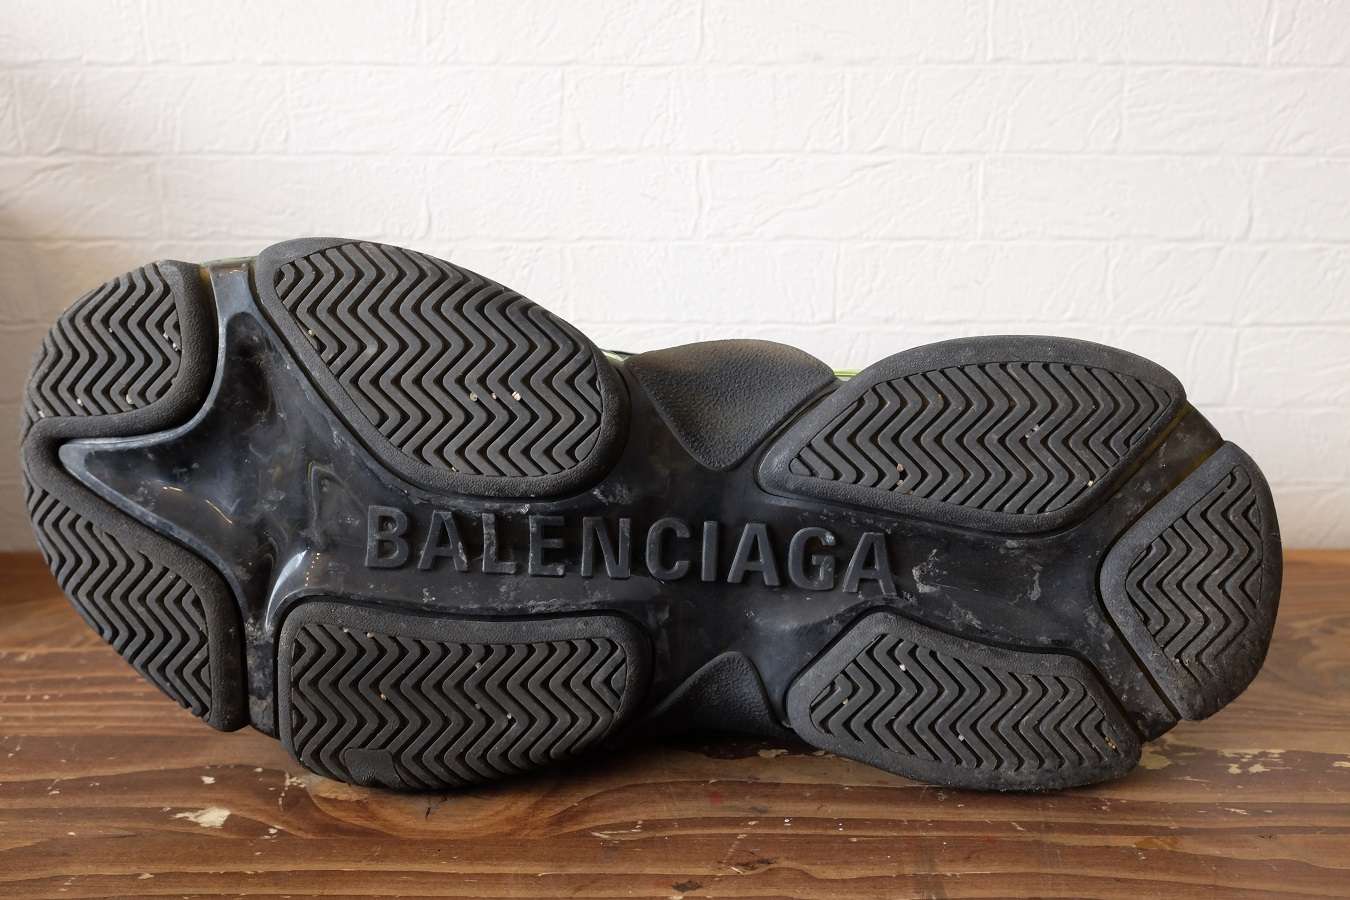 バレンシアガの靴底